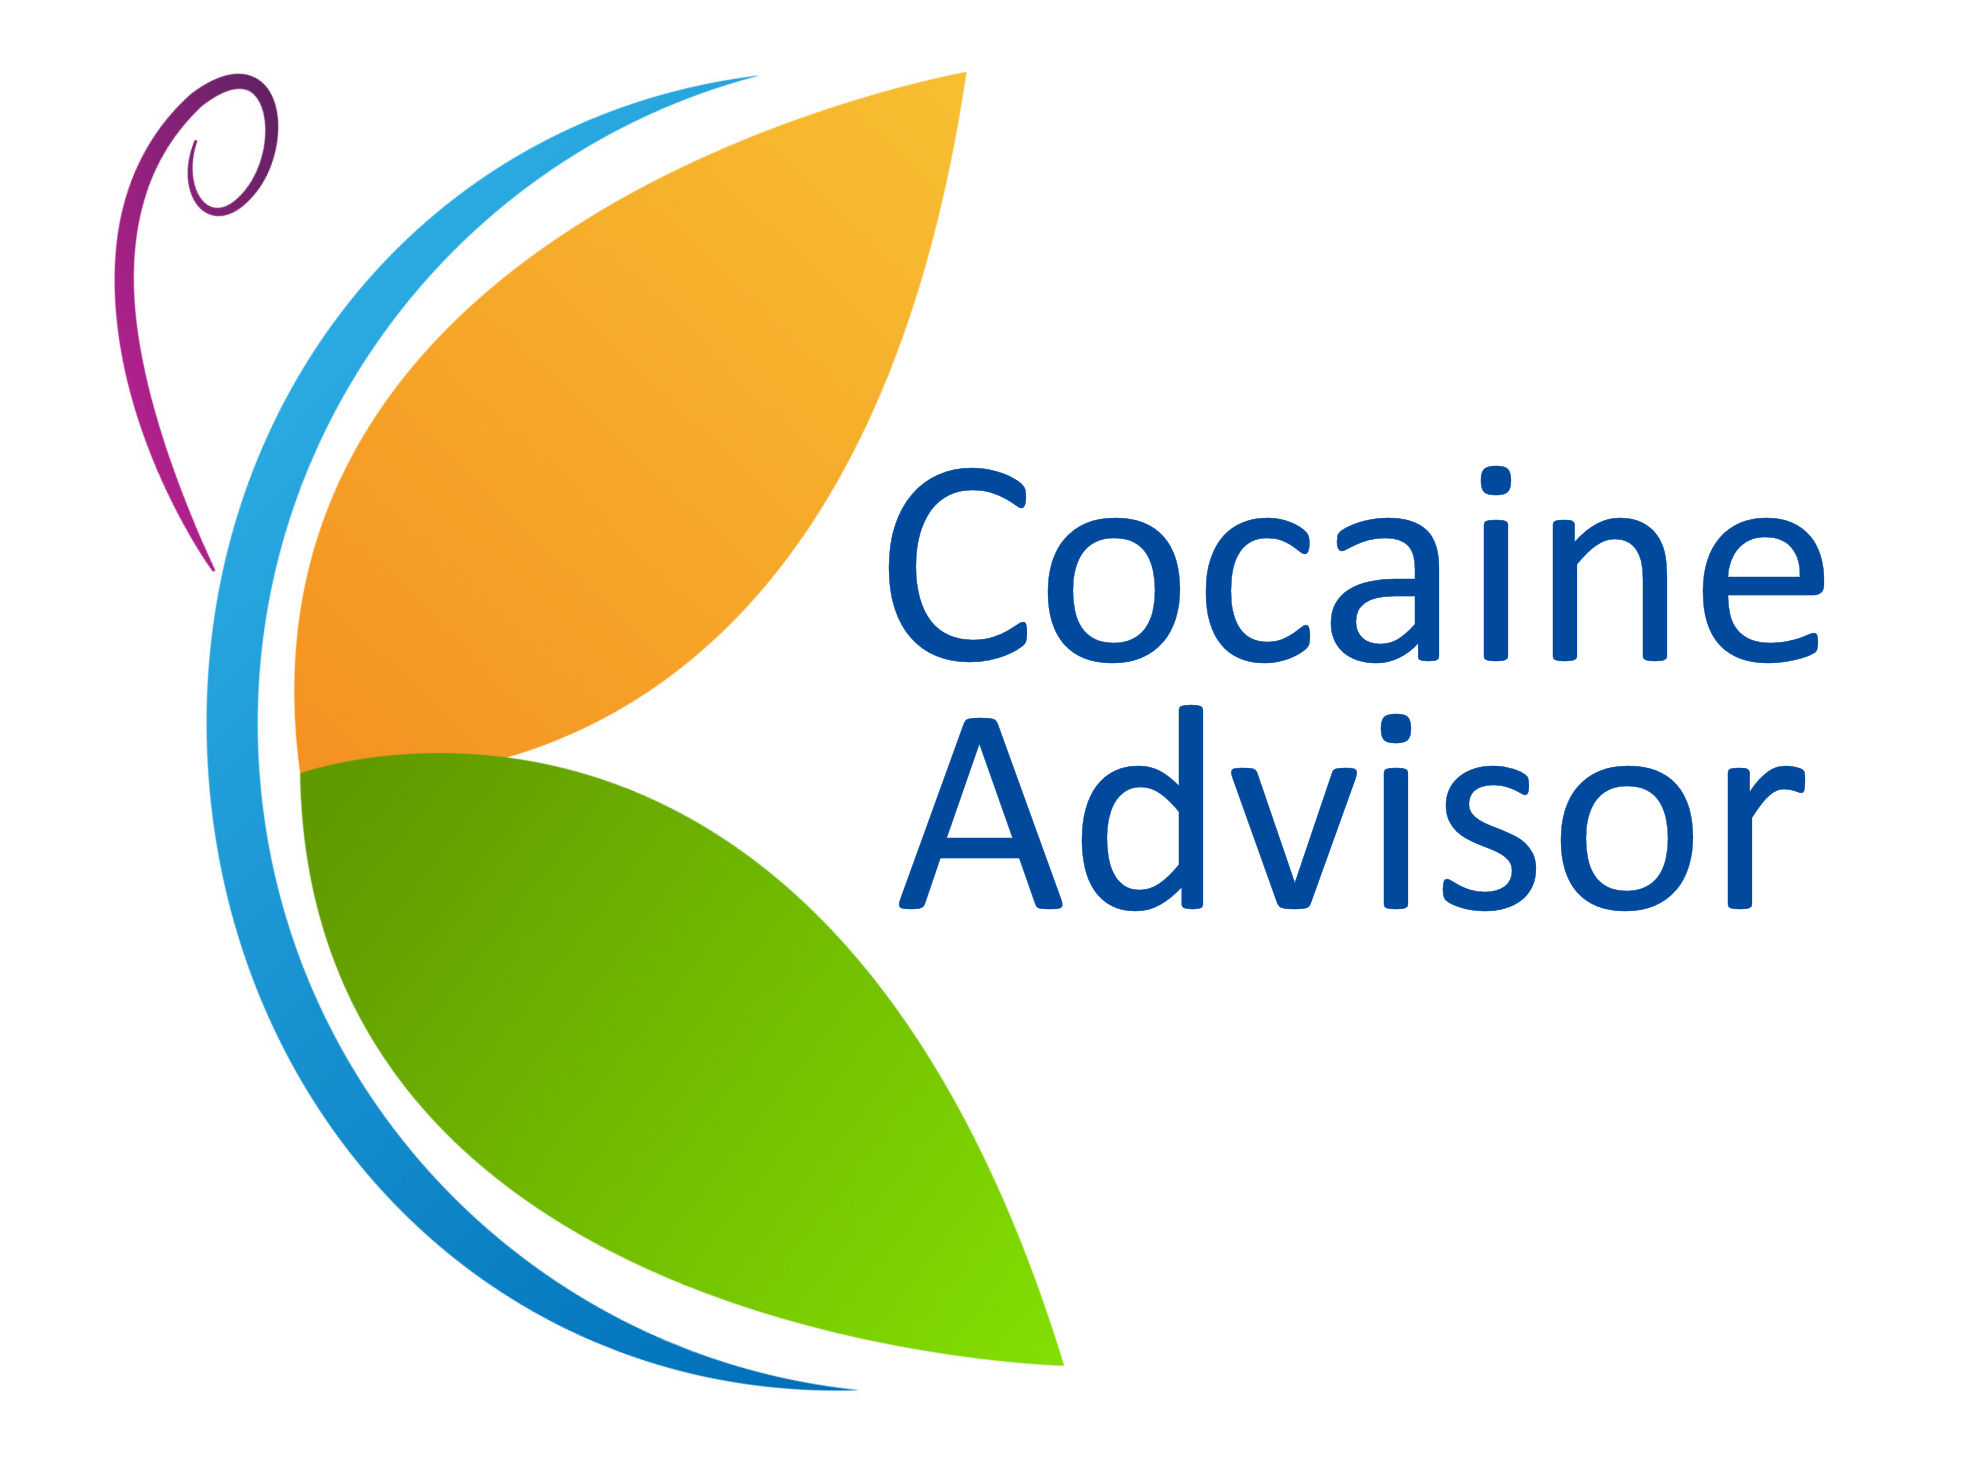 Cocaine Advisor - For Help, Treatment & Advice For Cocaine Addiction